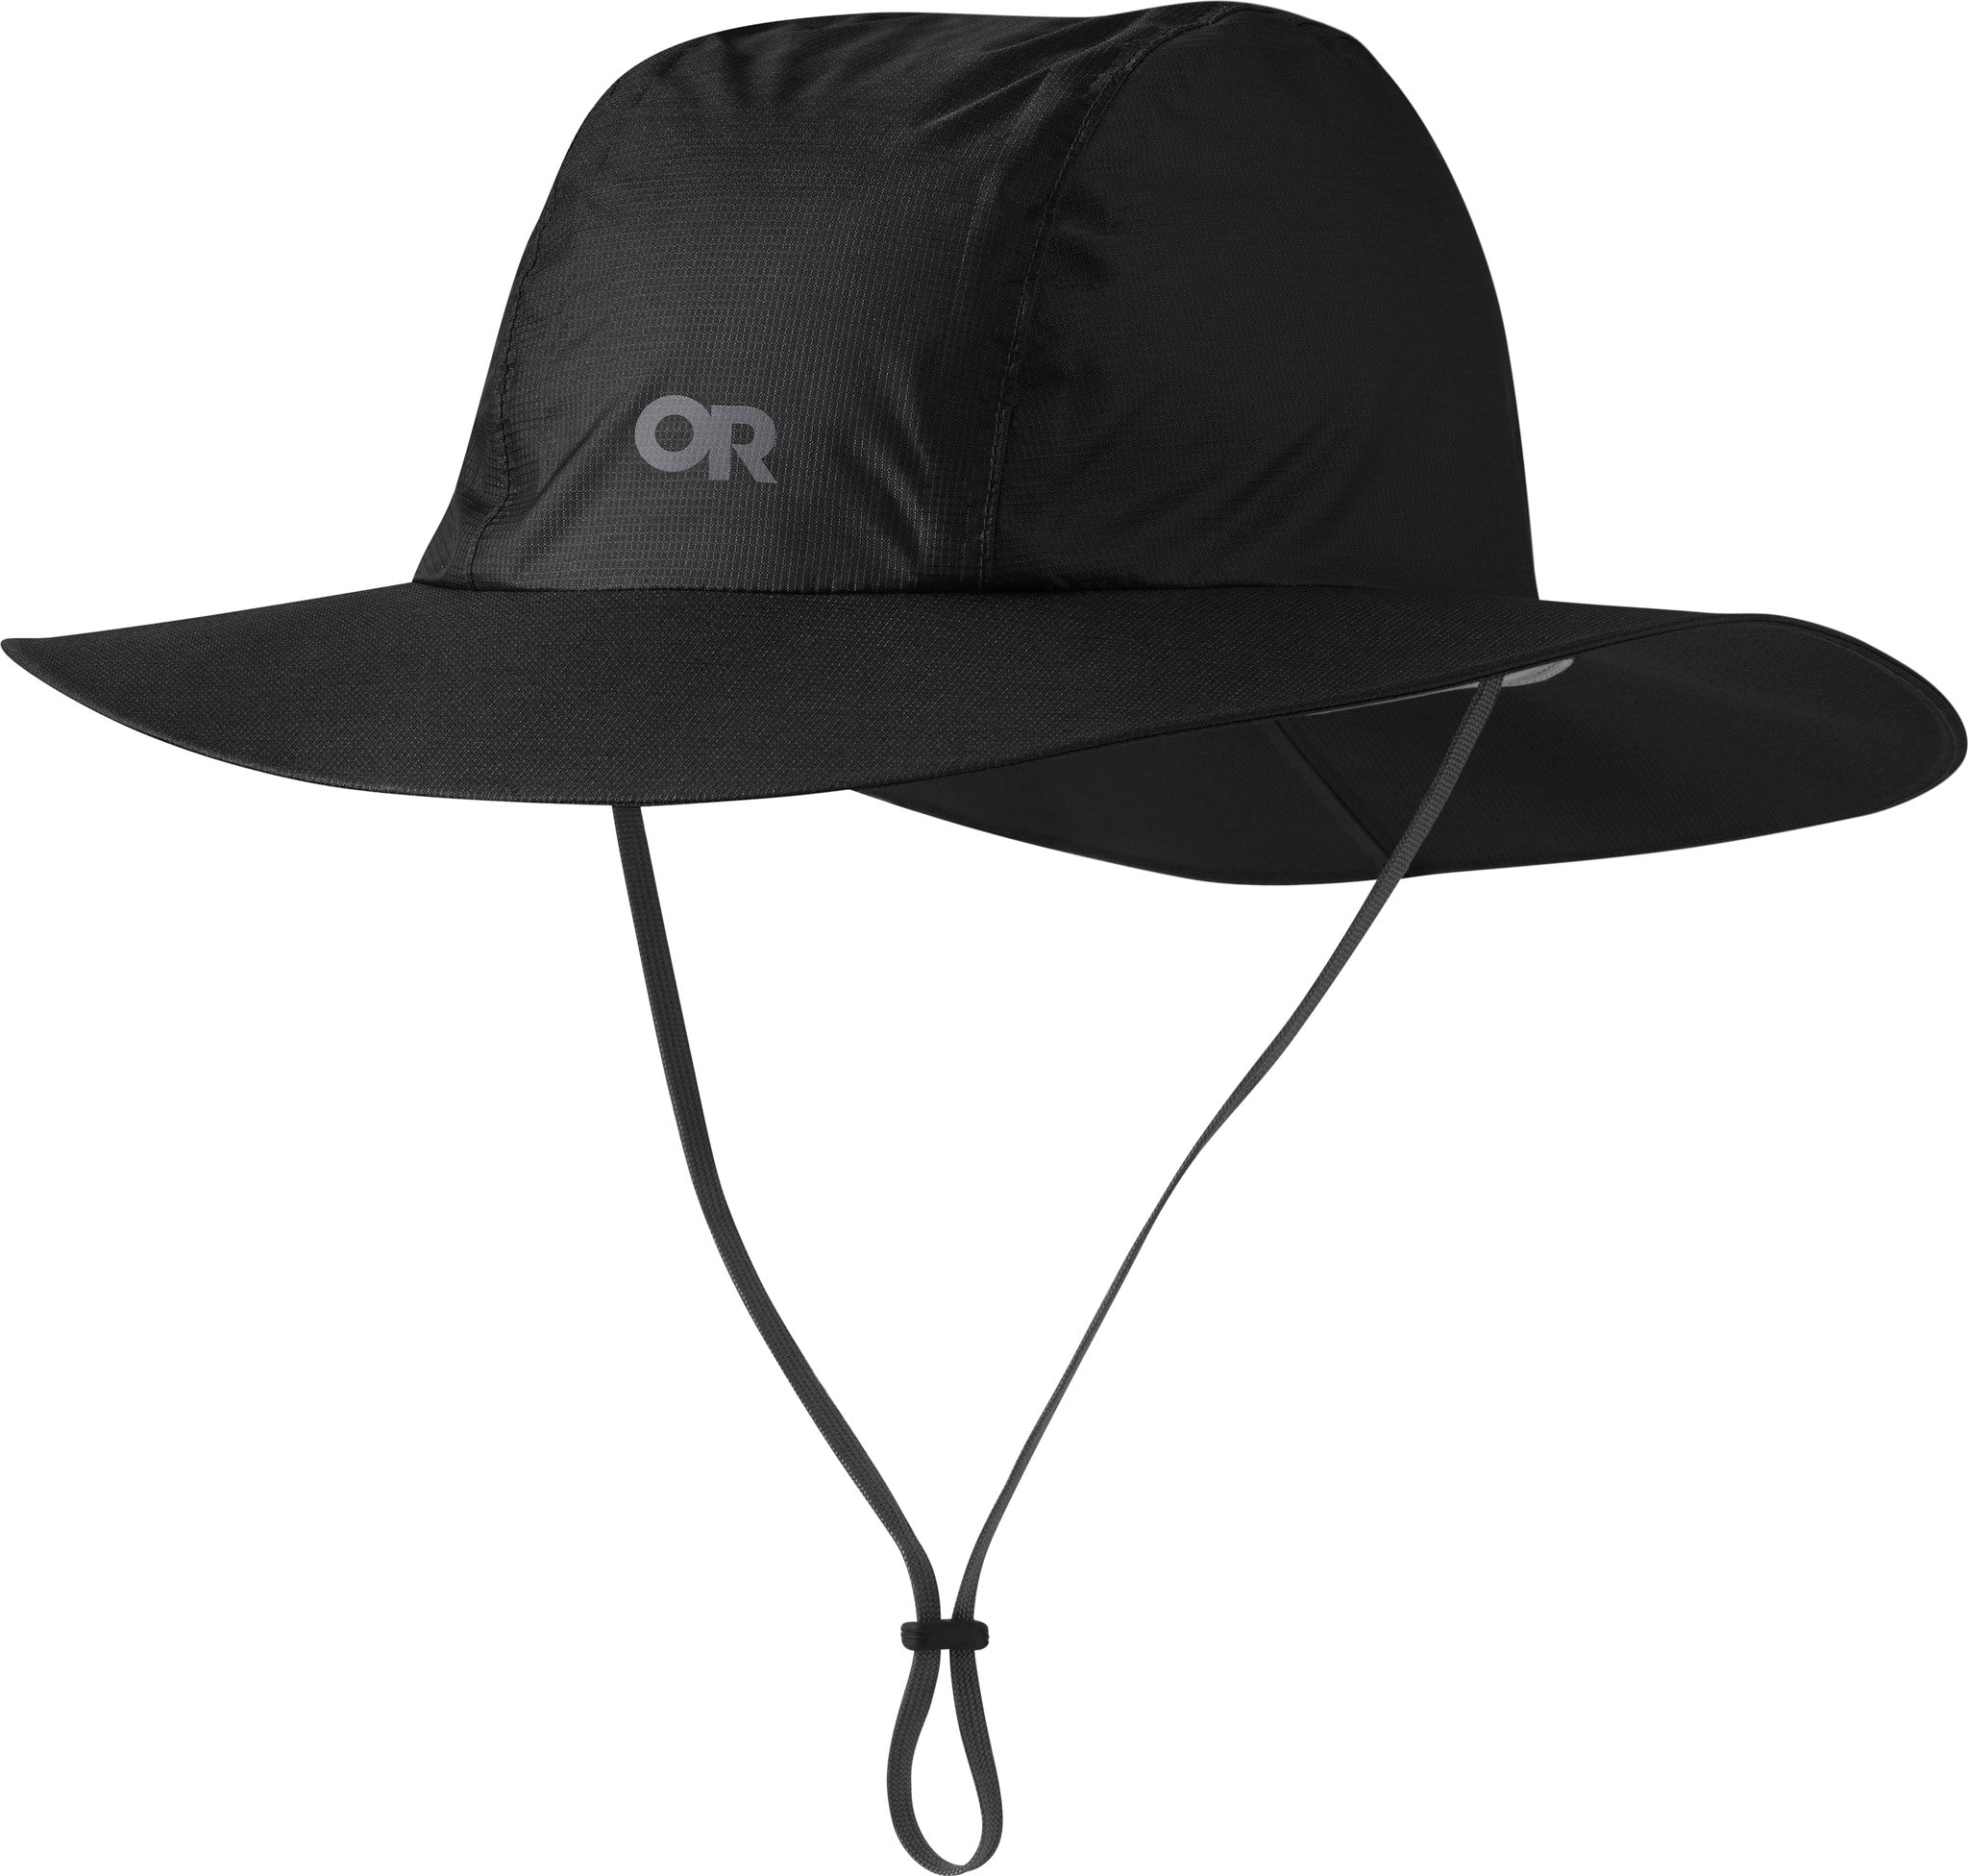 Outdoor Research Helium Rain Full Brim Hat - Black